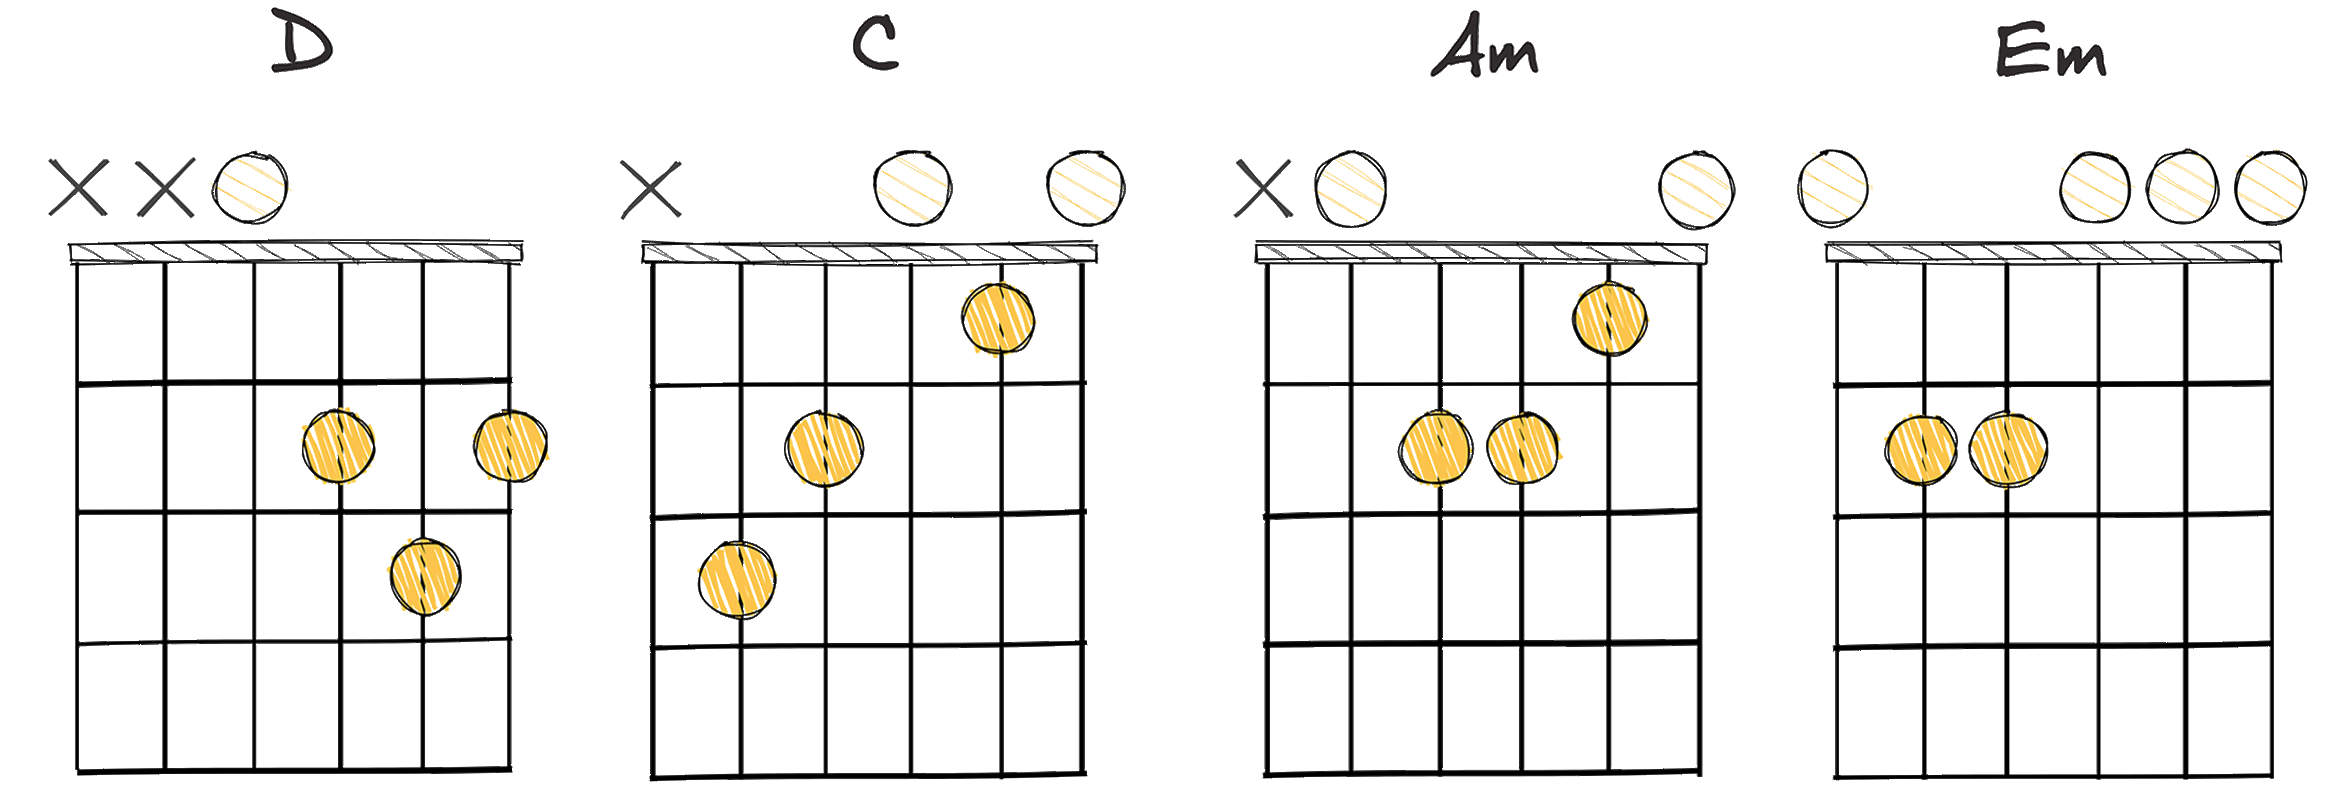 V-IV-ii-vi (5-4-2-6) chords diagram